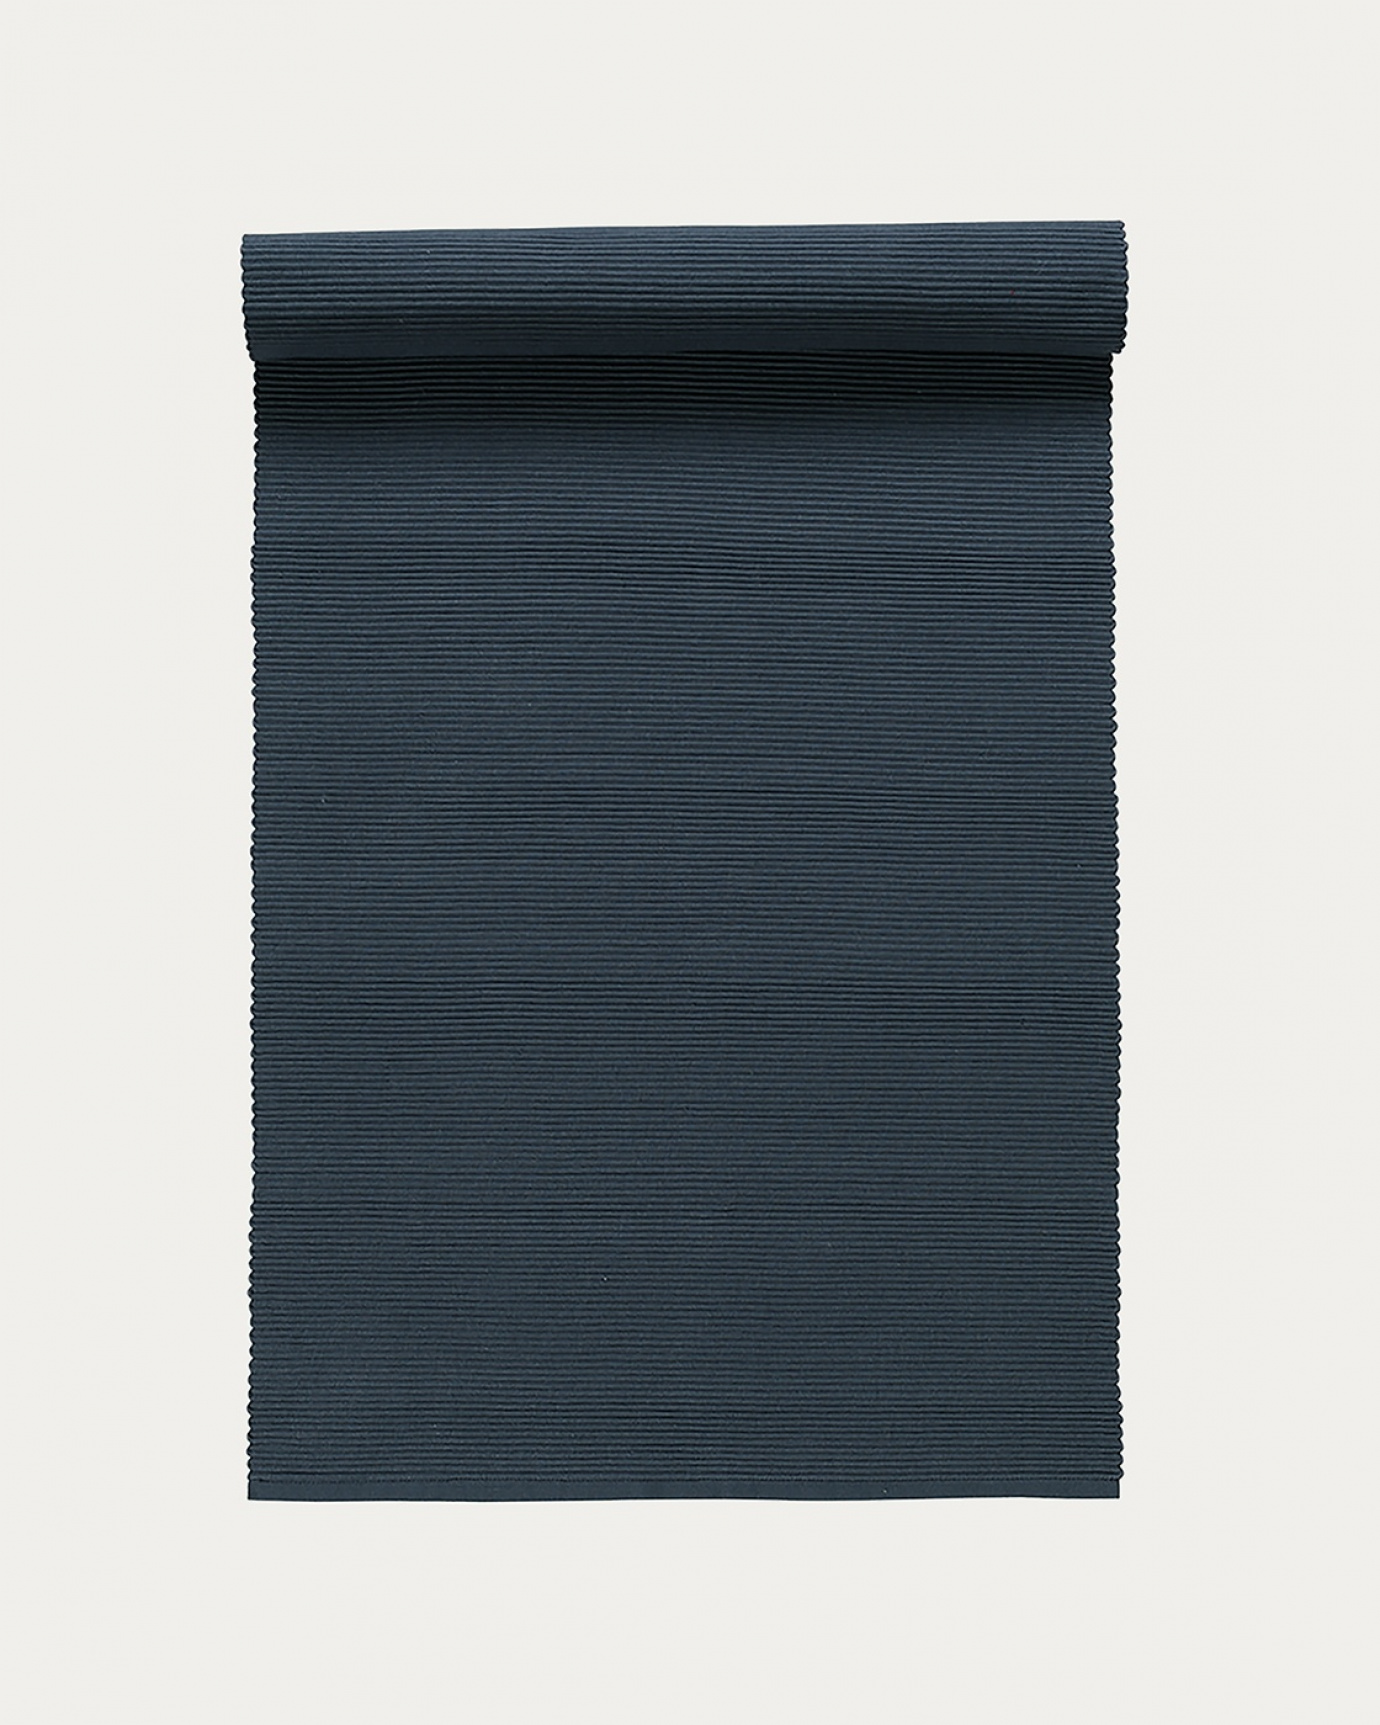 Image du produit chemin de table UNI bleu tempete en coton doux de qualité côtelée de LINUM DESIGN. Taille 45 x 150 cm.